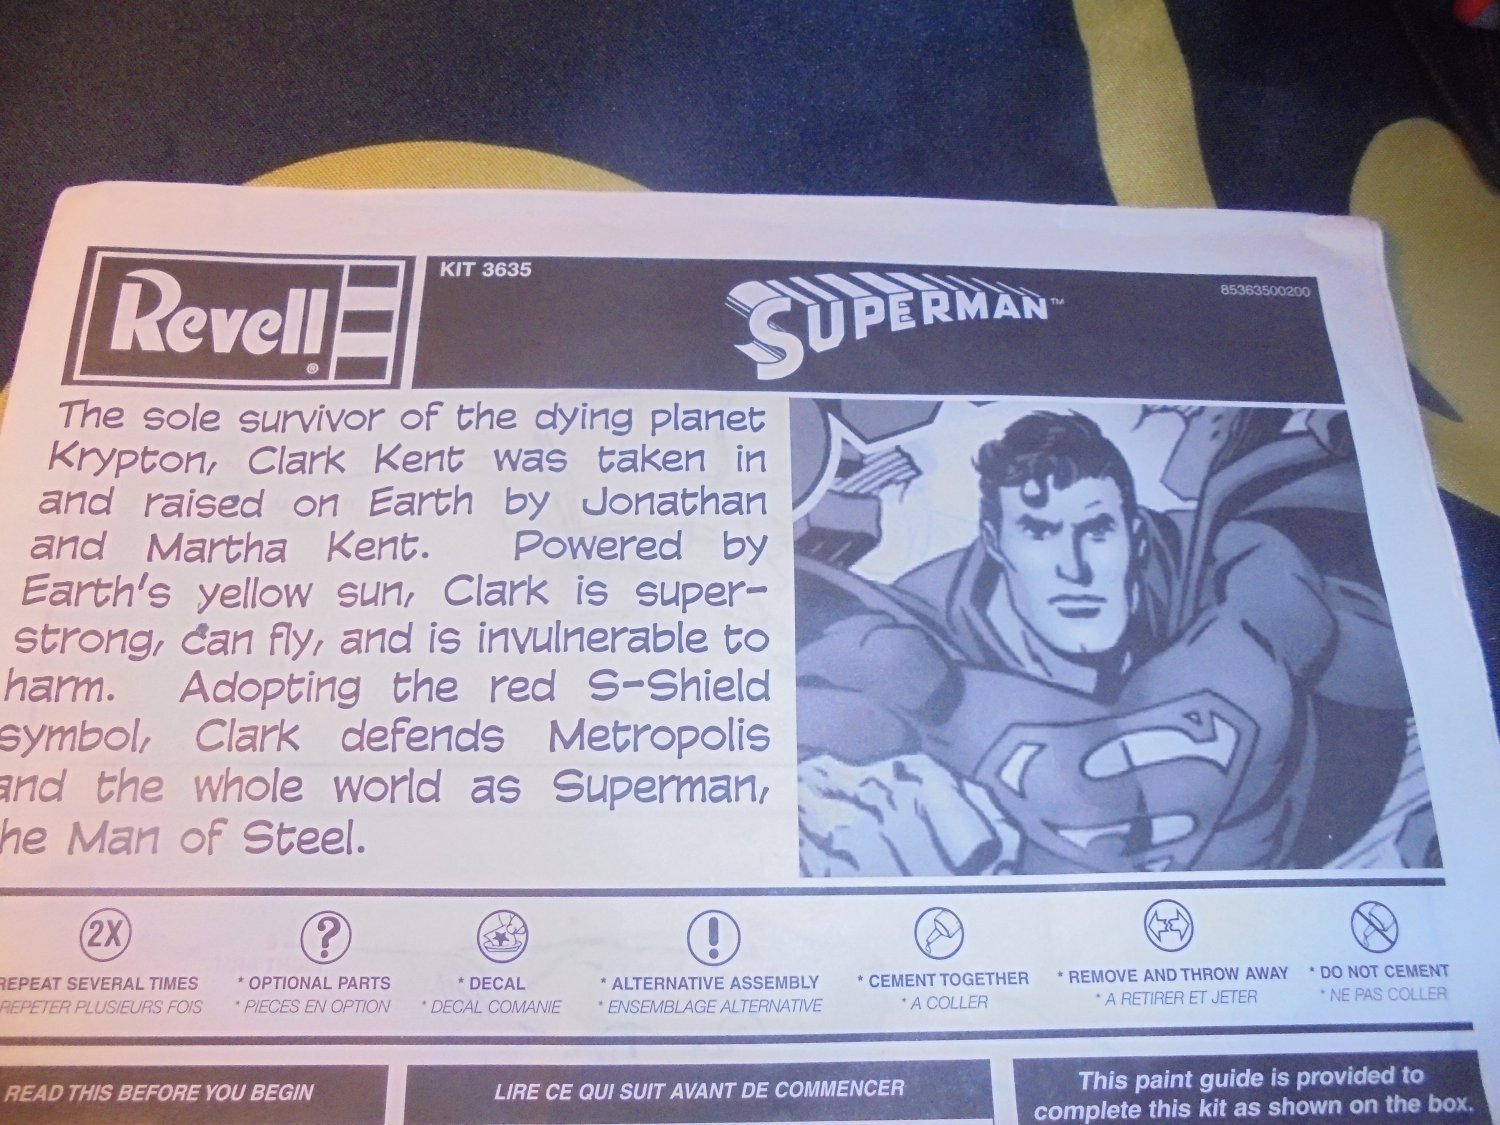 1999 Original Revell SUPERMAN MODEL KIT Instructions, Revell Models! $4.00